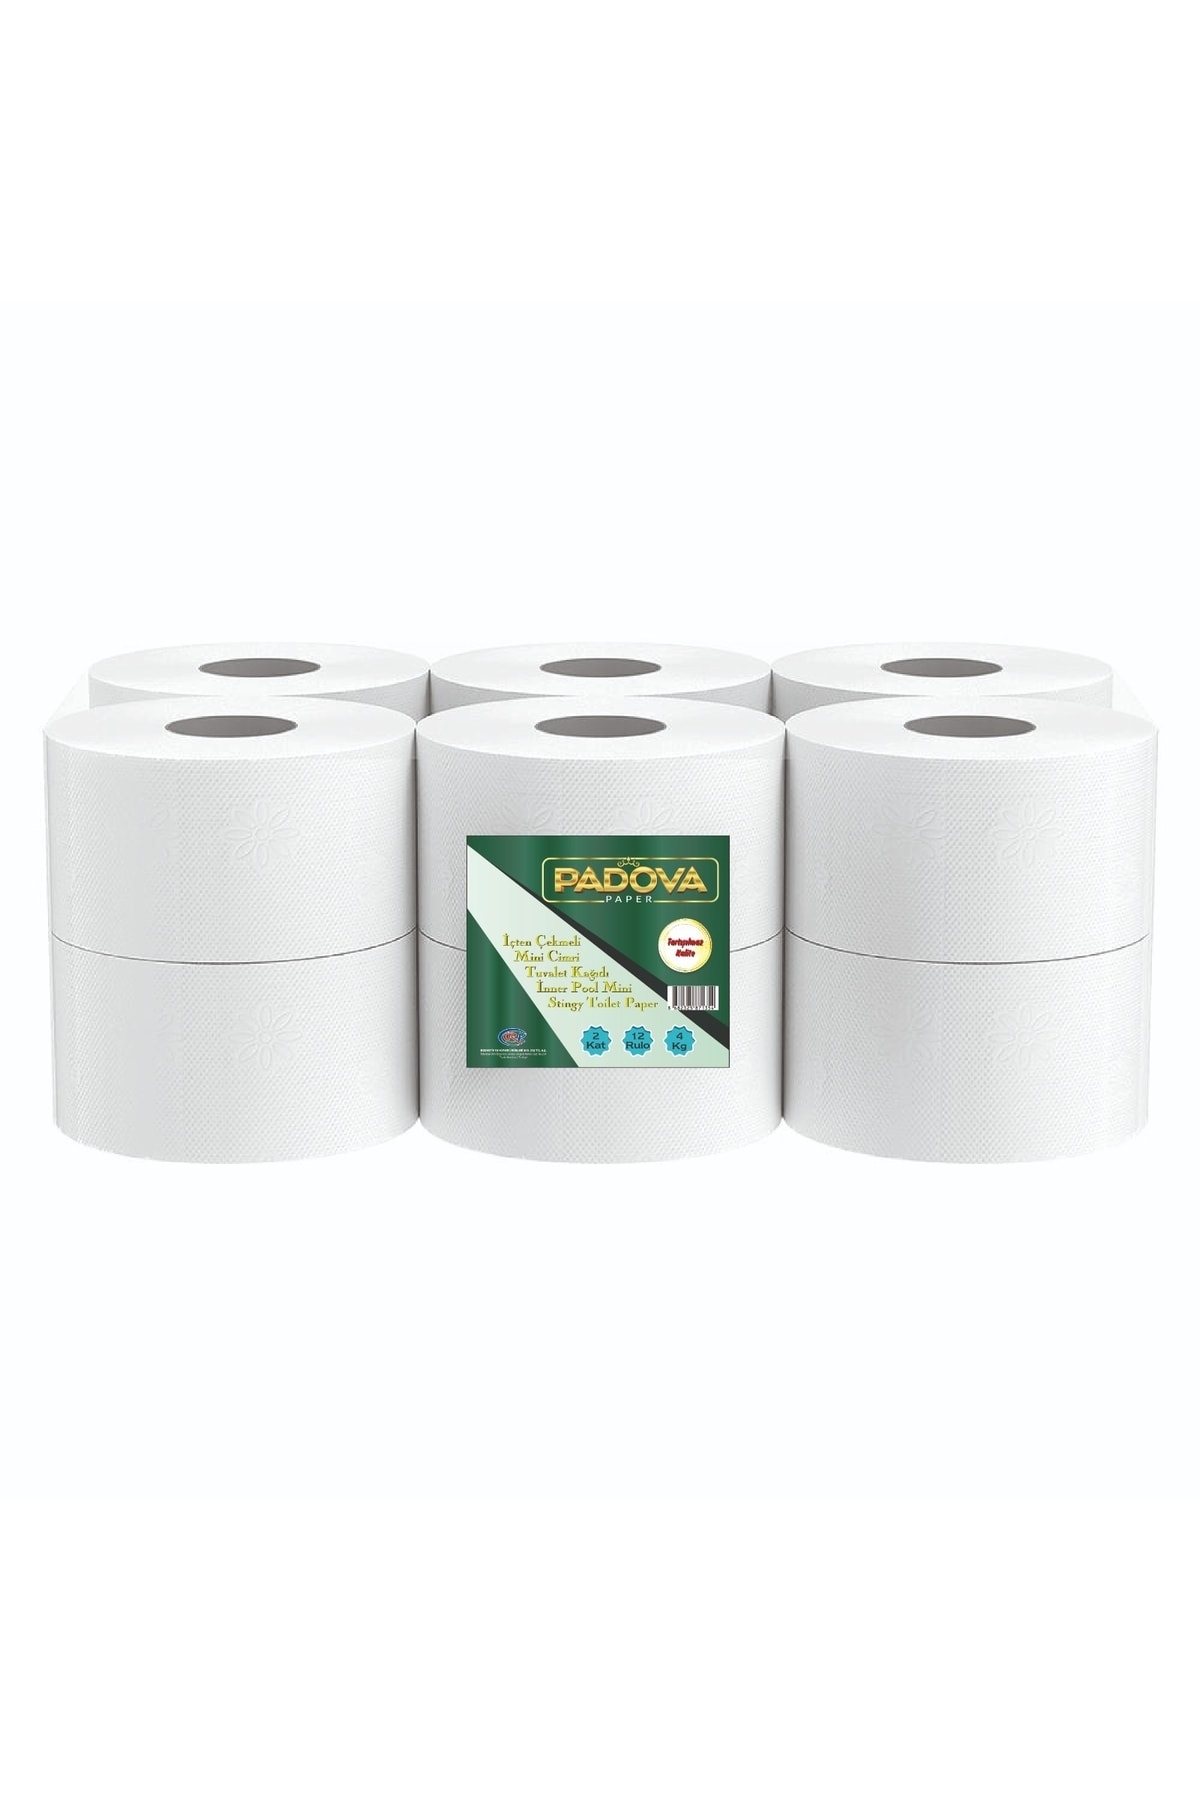 PADOVA Mini Cimri Içten Çekmeli Tuvalet Kağıdı (12 Rulo- 4 Kg)